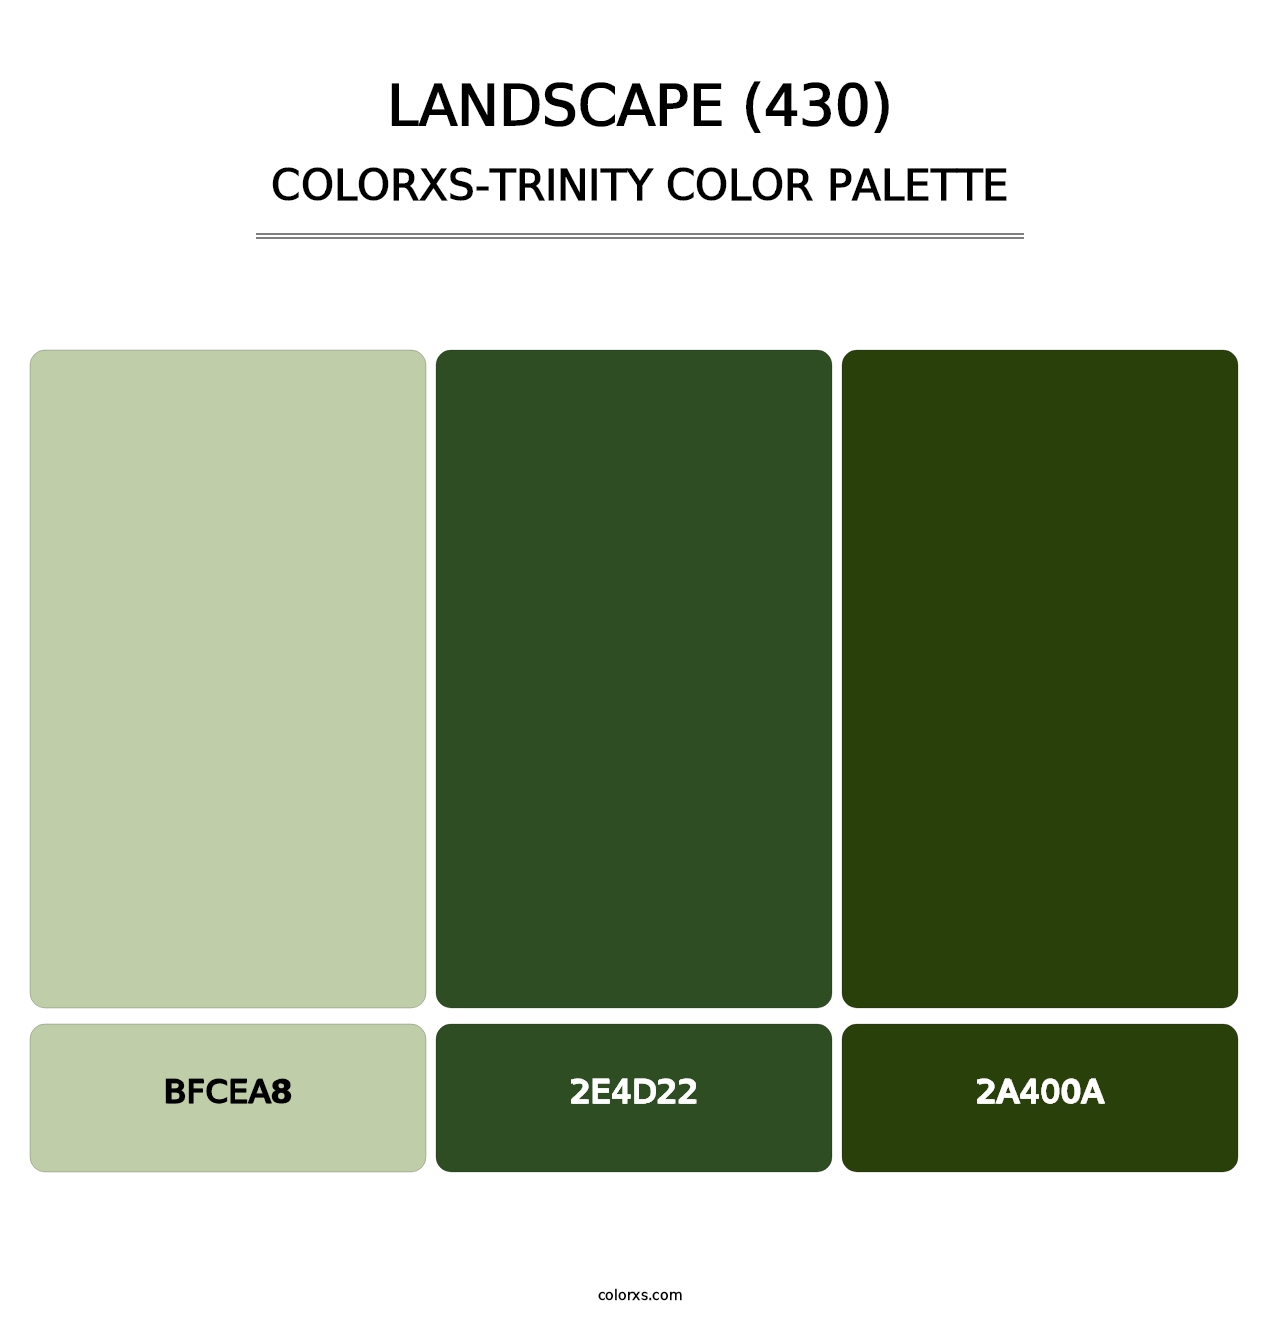 Landscape (430) - Colorxs Trinity Palette